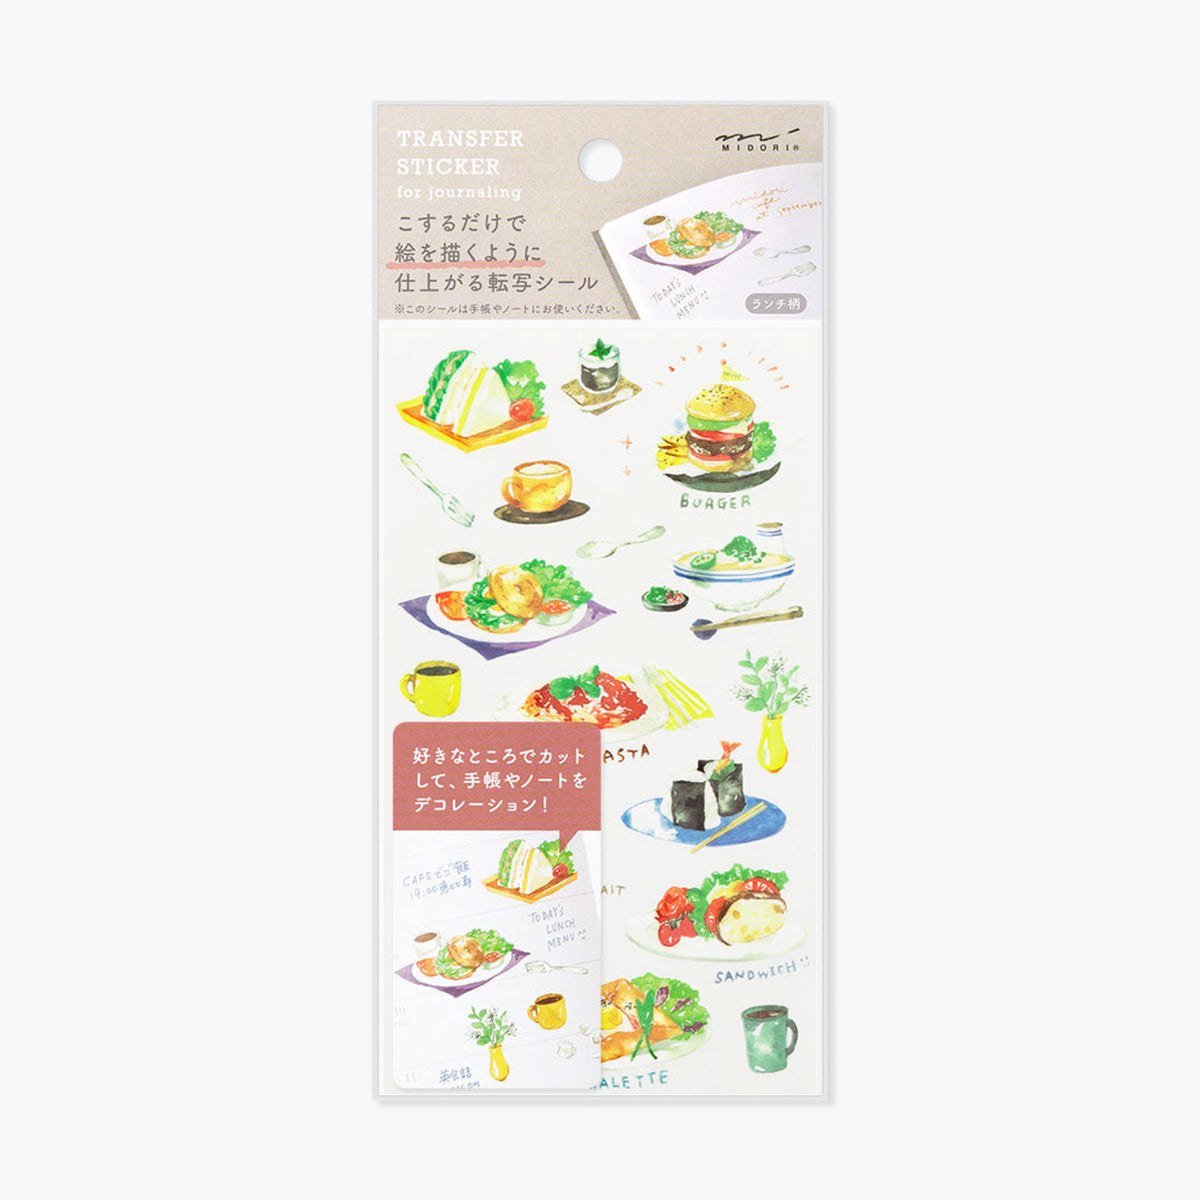 Midori - Sticker Seal - Transfer - Lunch